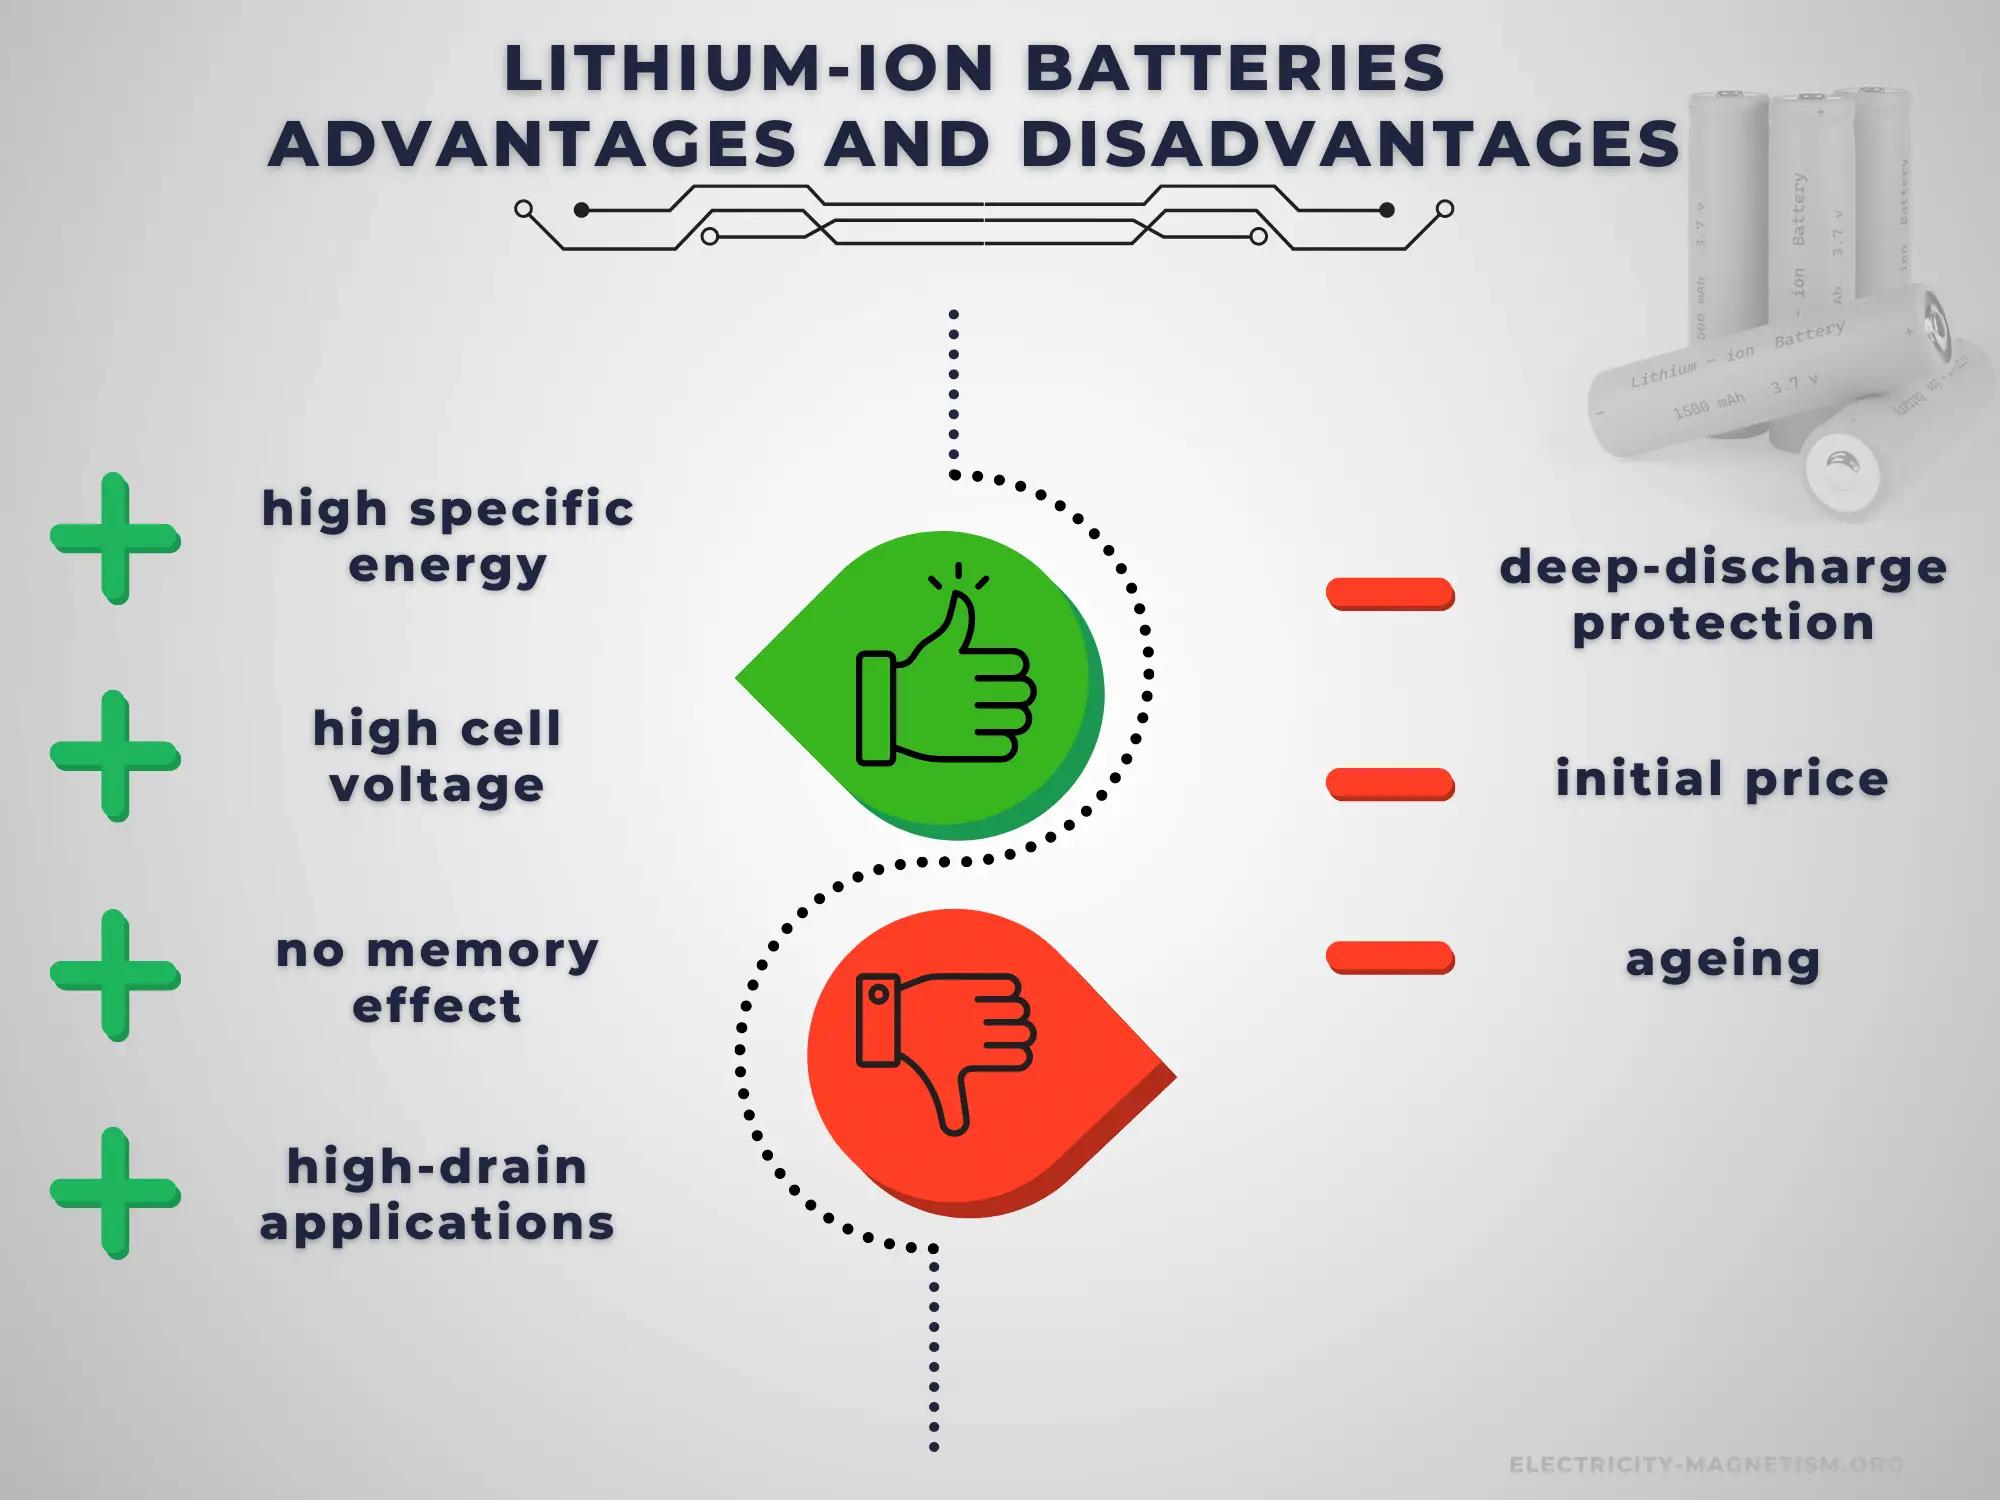 efecto del ion comun en baterias - Cómo afecta el ion común